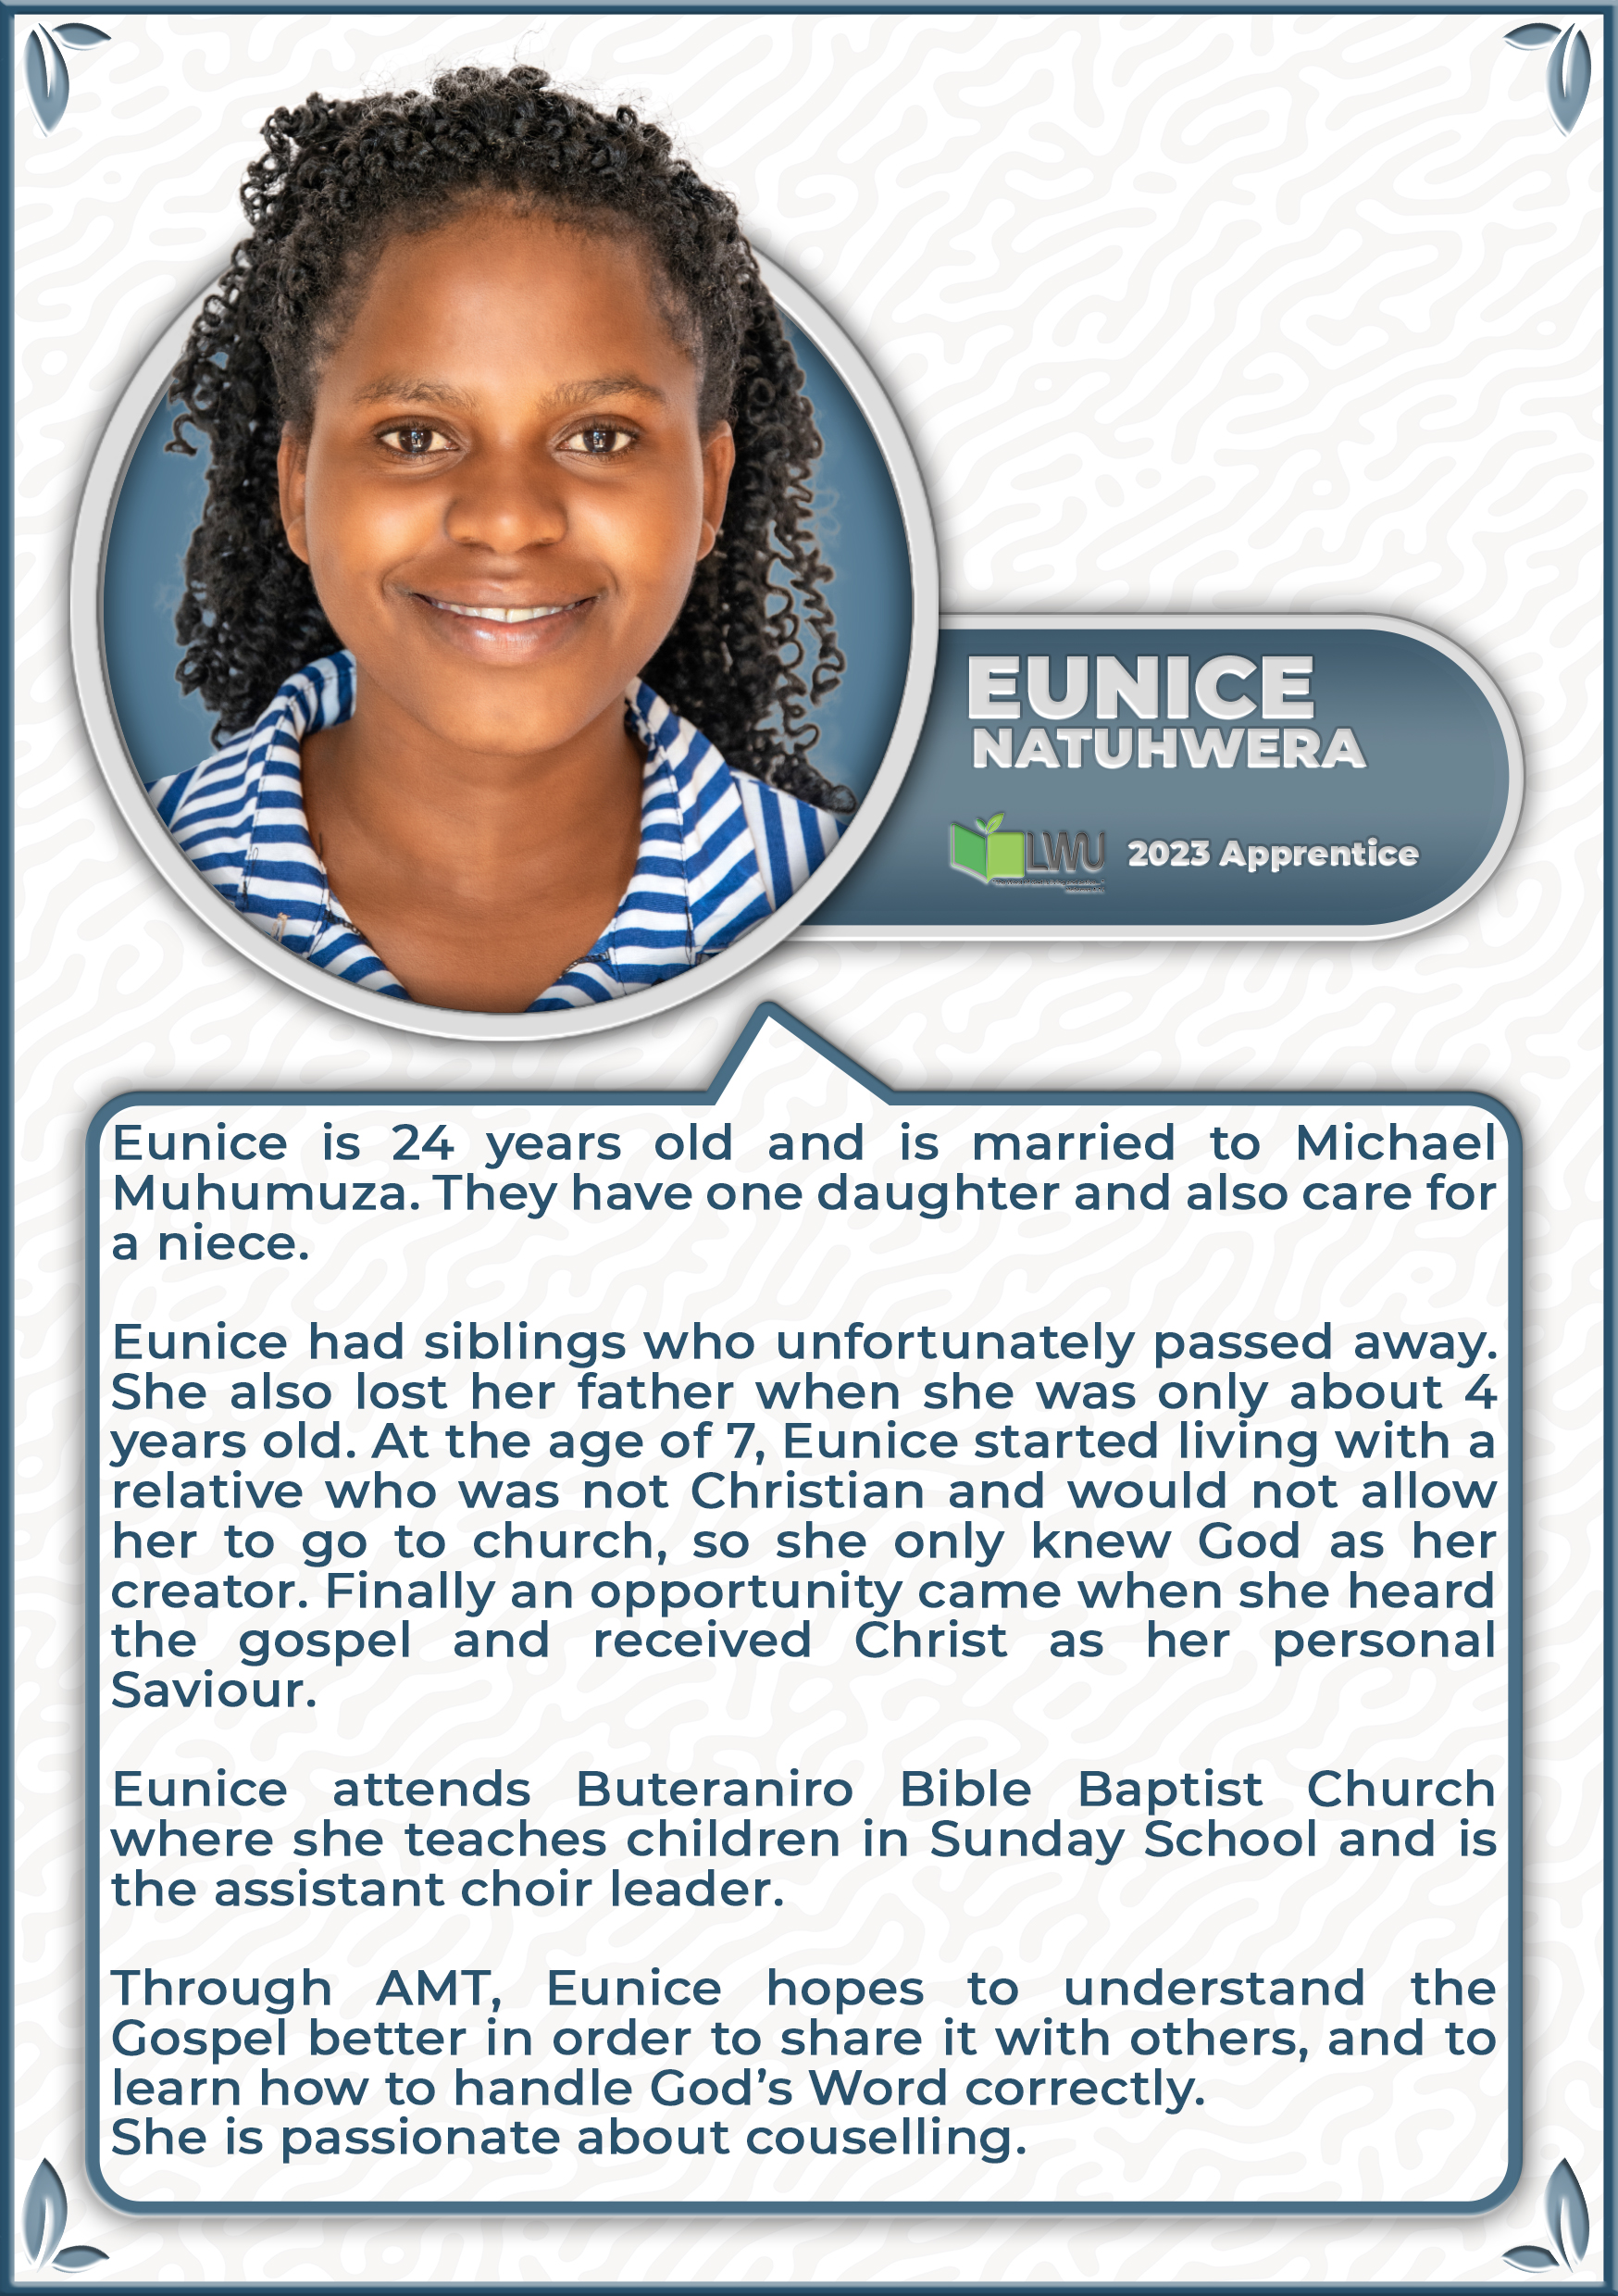 Eunice Natuhwera